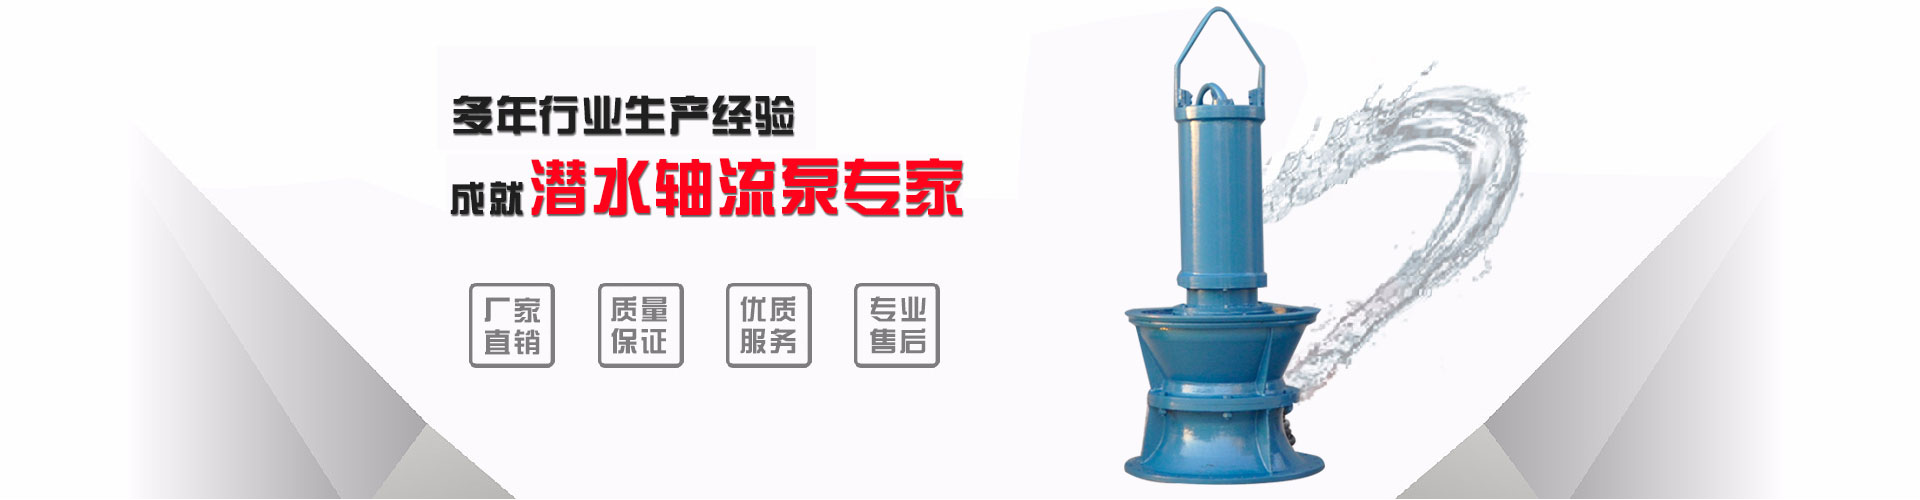 郑州型号浮筒泵厂_株洲浮筒泵